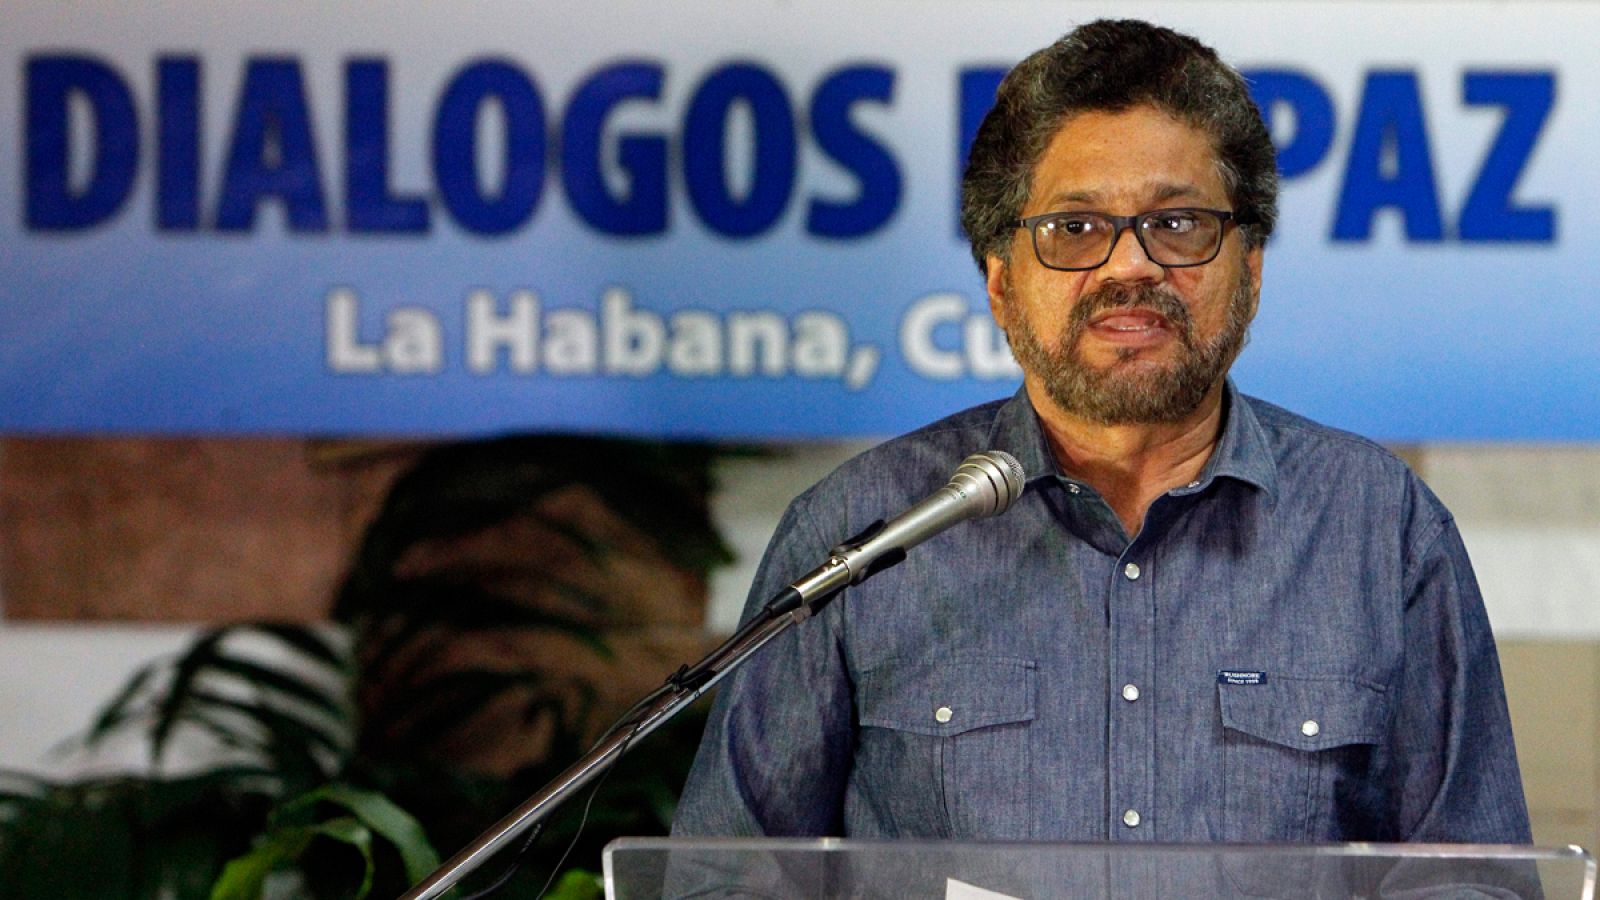 Imagen de archivo de uno de los líderes de las FARC, Luciano Marín alias "Iván Márquez", durante los diálogos de paz en La Habana en octubre de 2015.